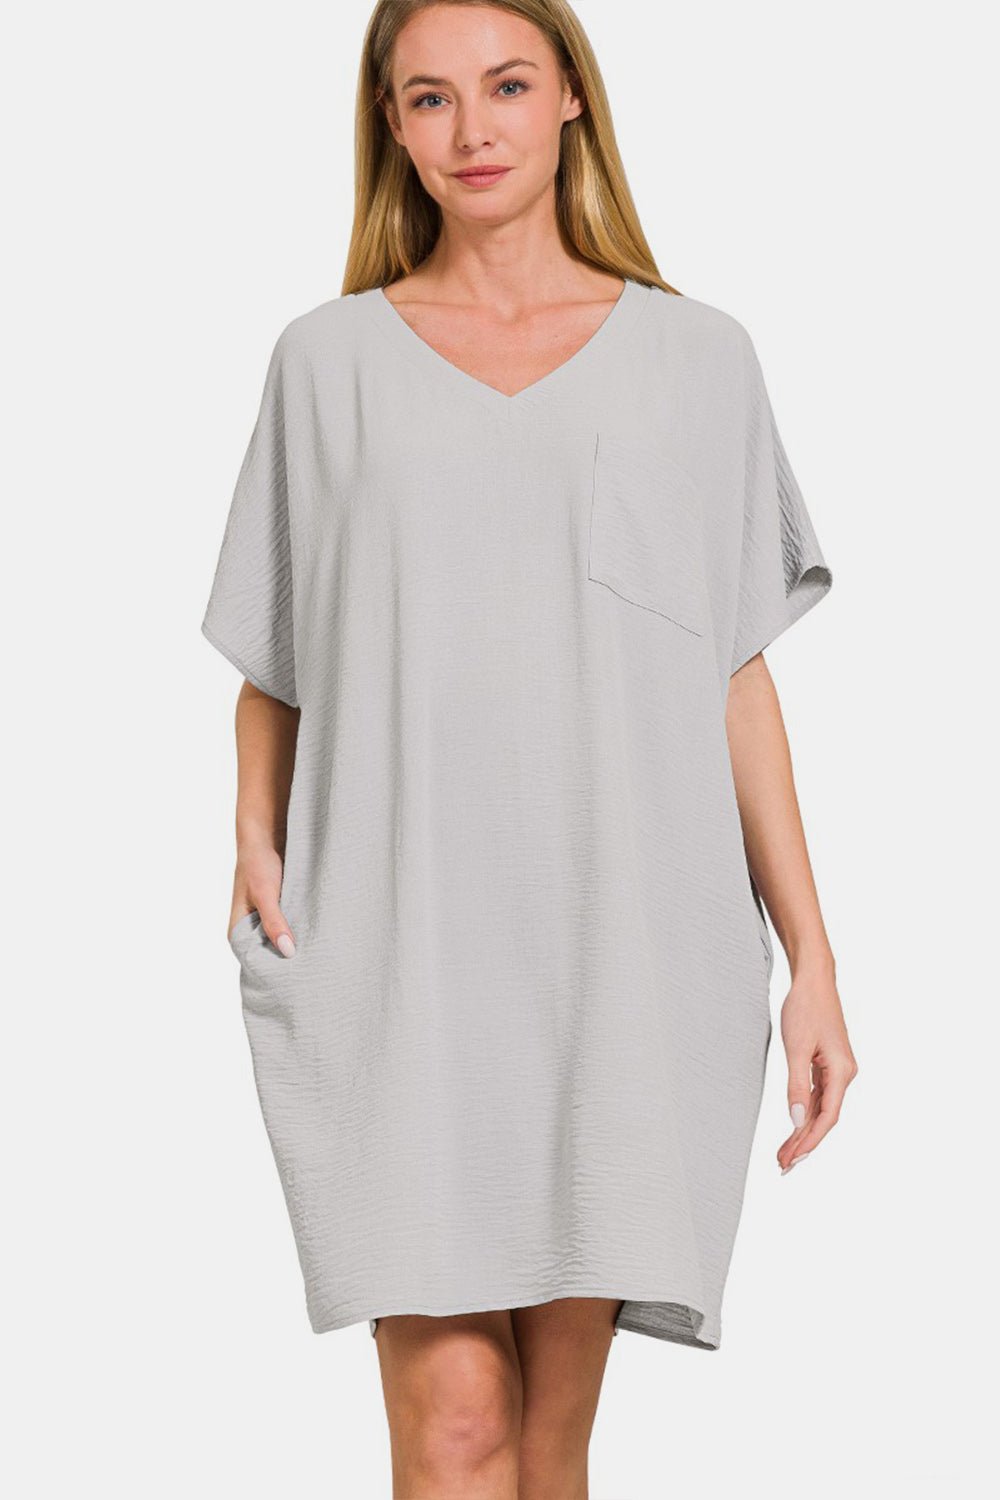 V-Neck Mini Tee Dress with Pockets in Light GreyMini DressZenana